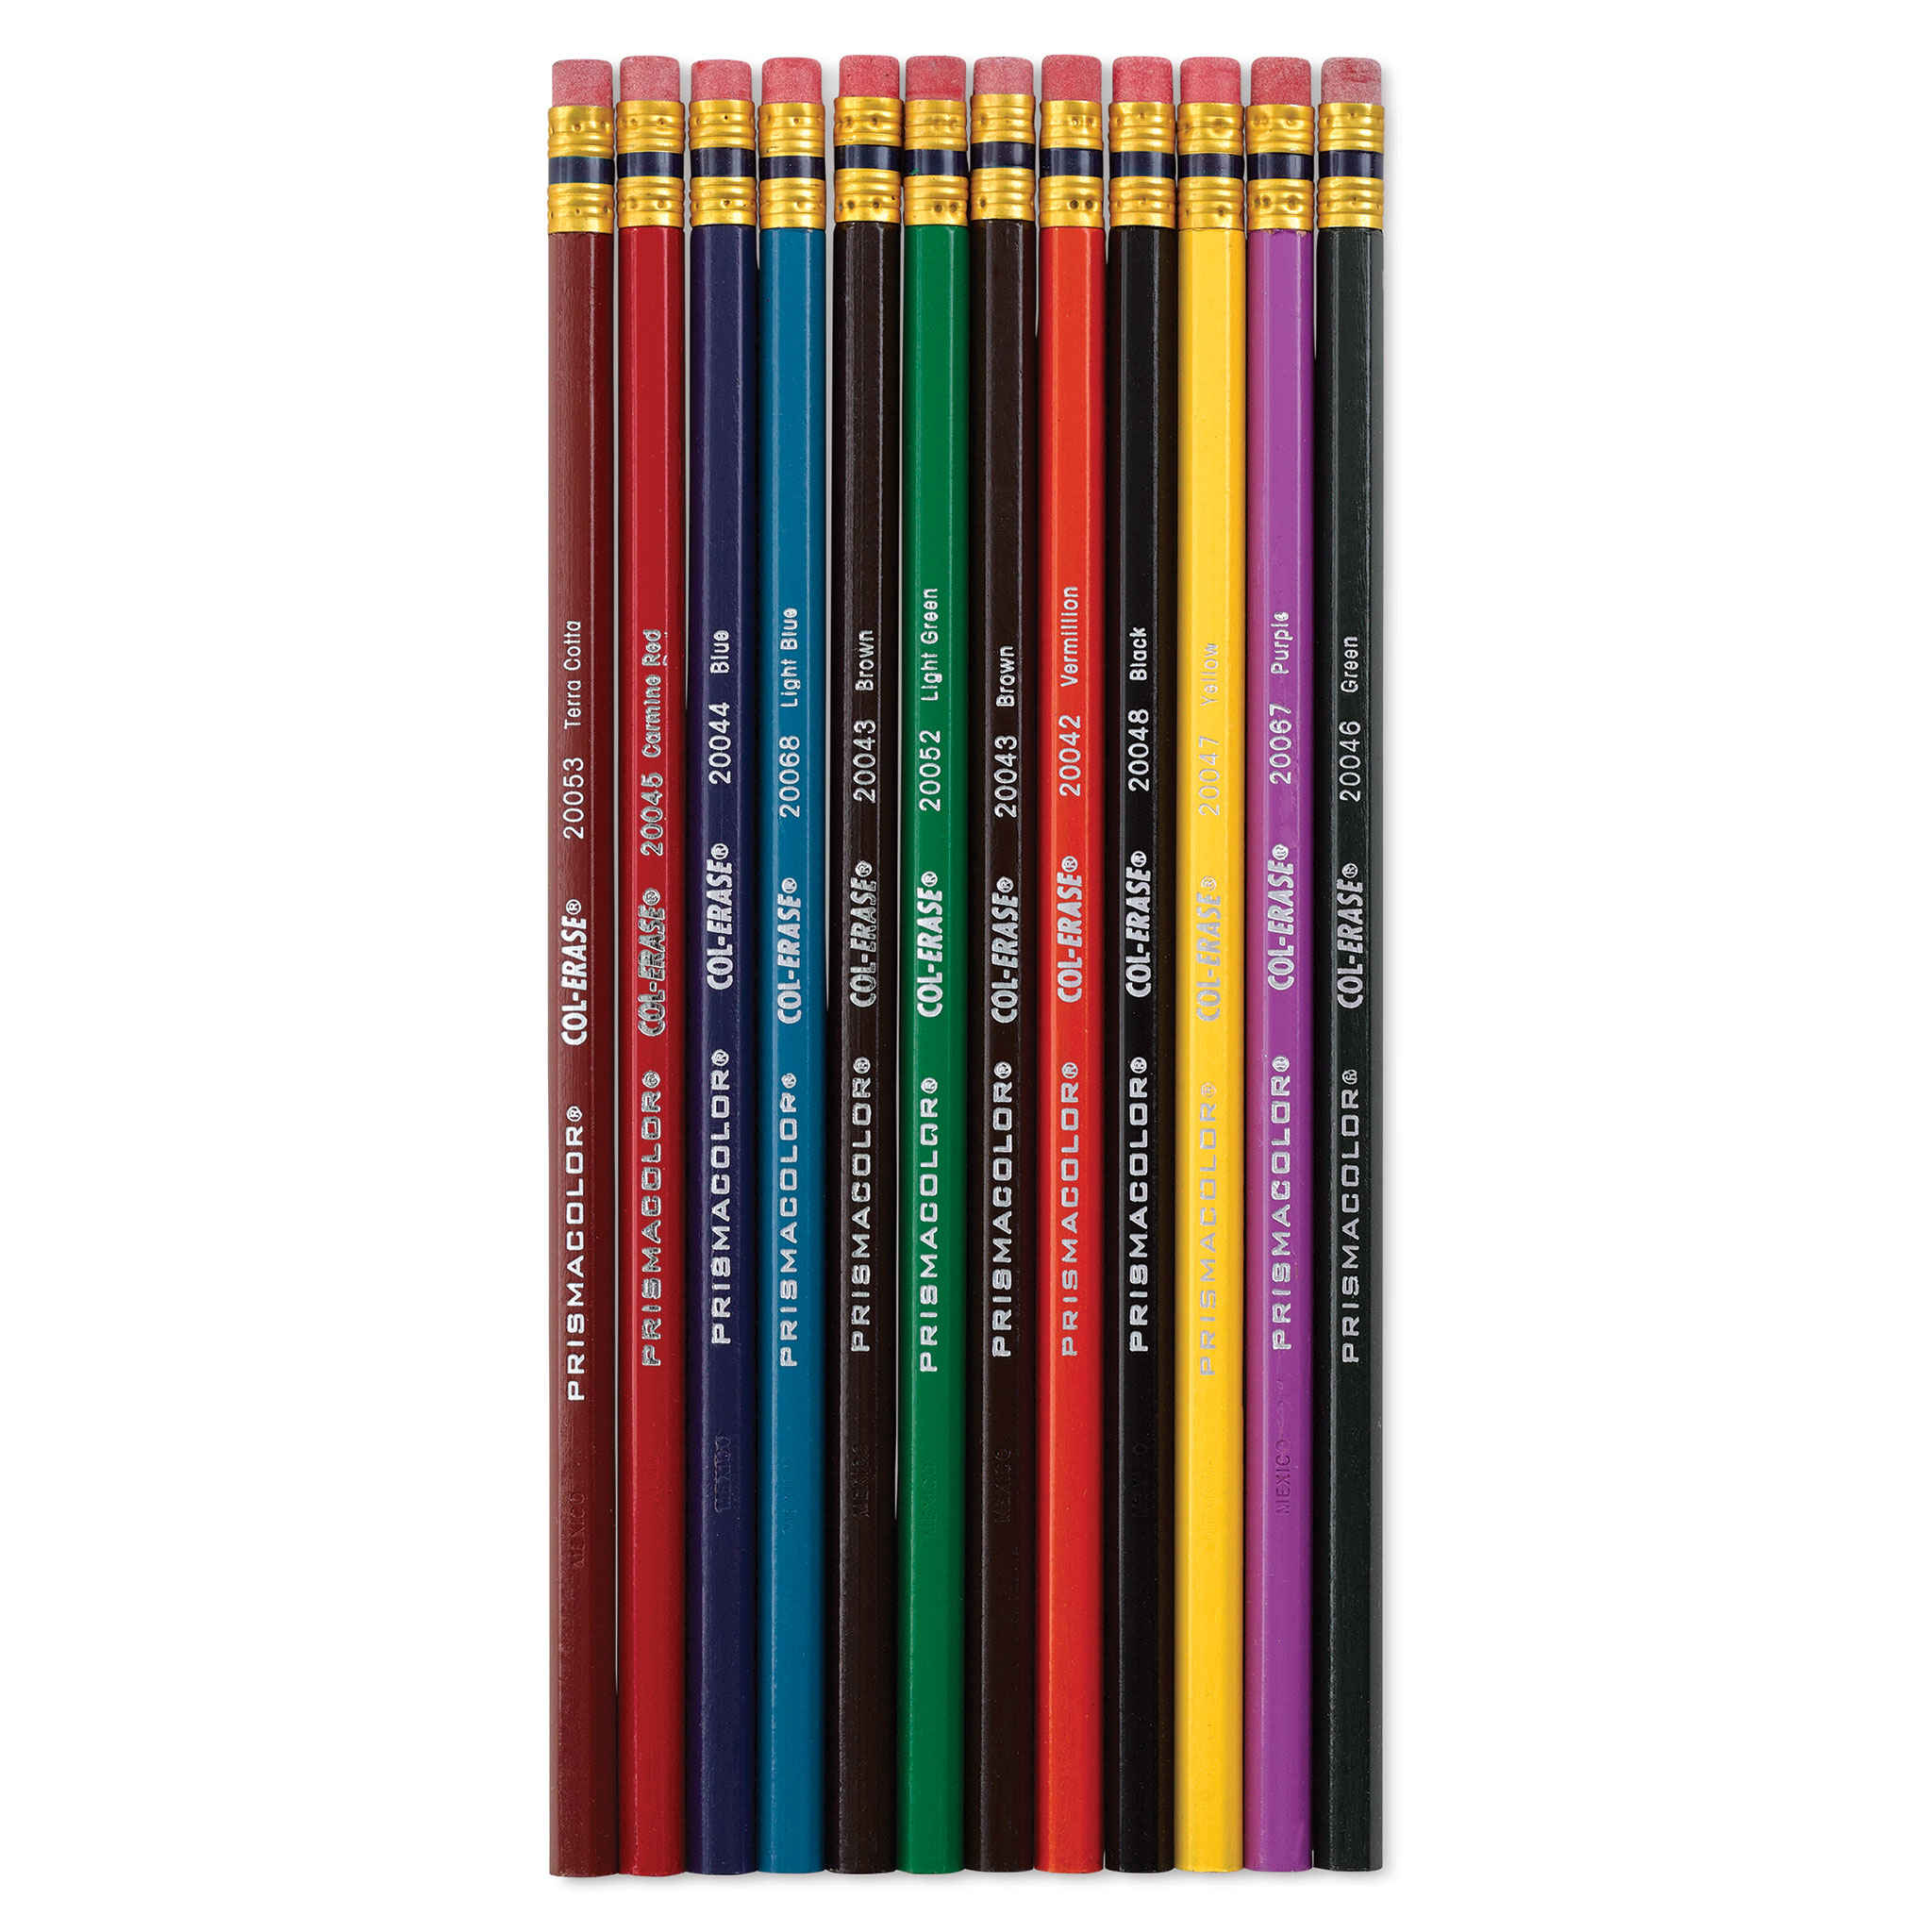 Prismacolor Col-Erase Pencil with Eraser - SAN20045 